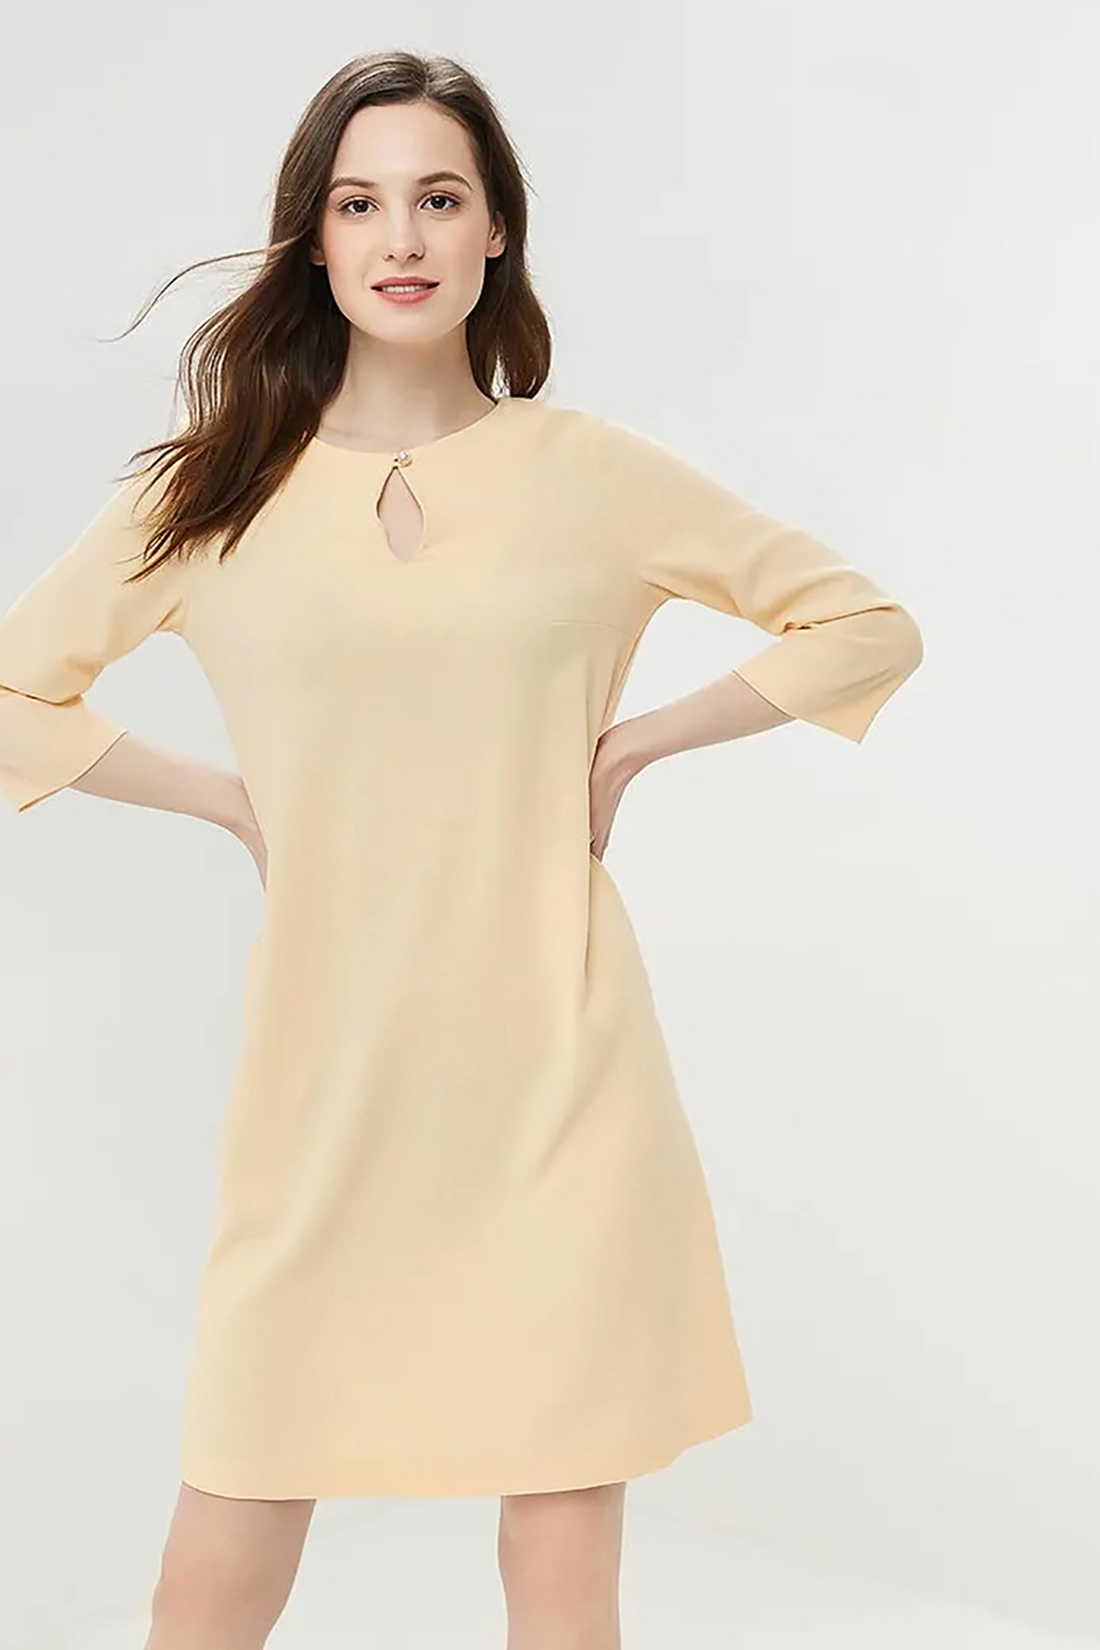 Платье с вырезом-каплей (арт. baon B459011), размер L, цвет желтый Платье с вырезом-каплей (арт. baon B459011) - фото 3